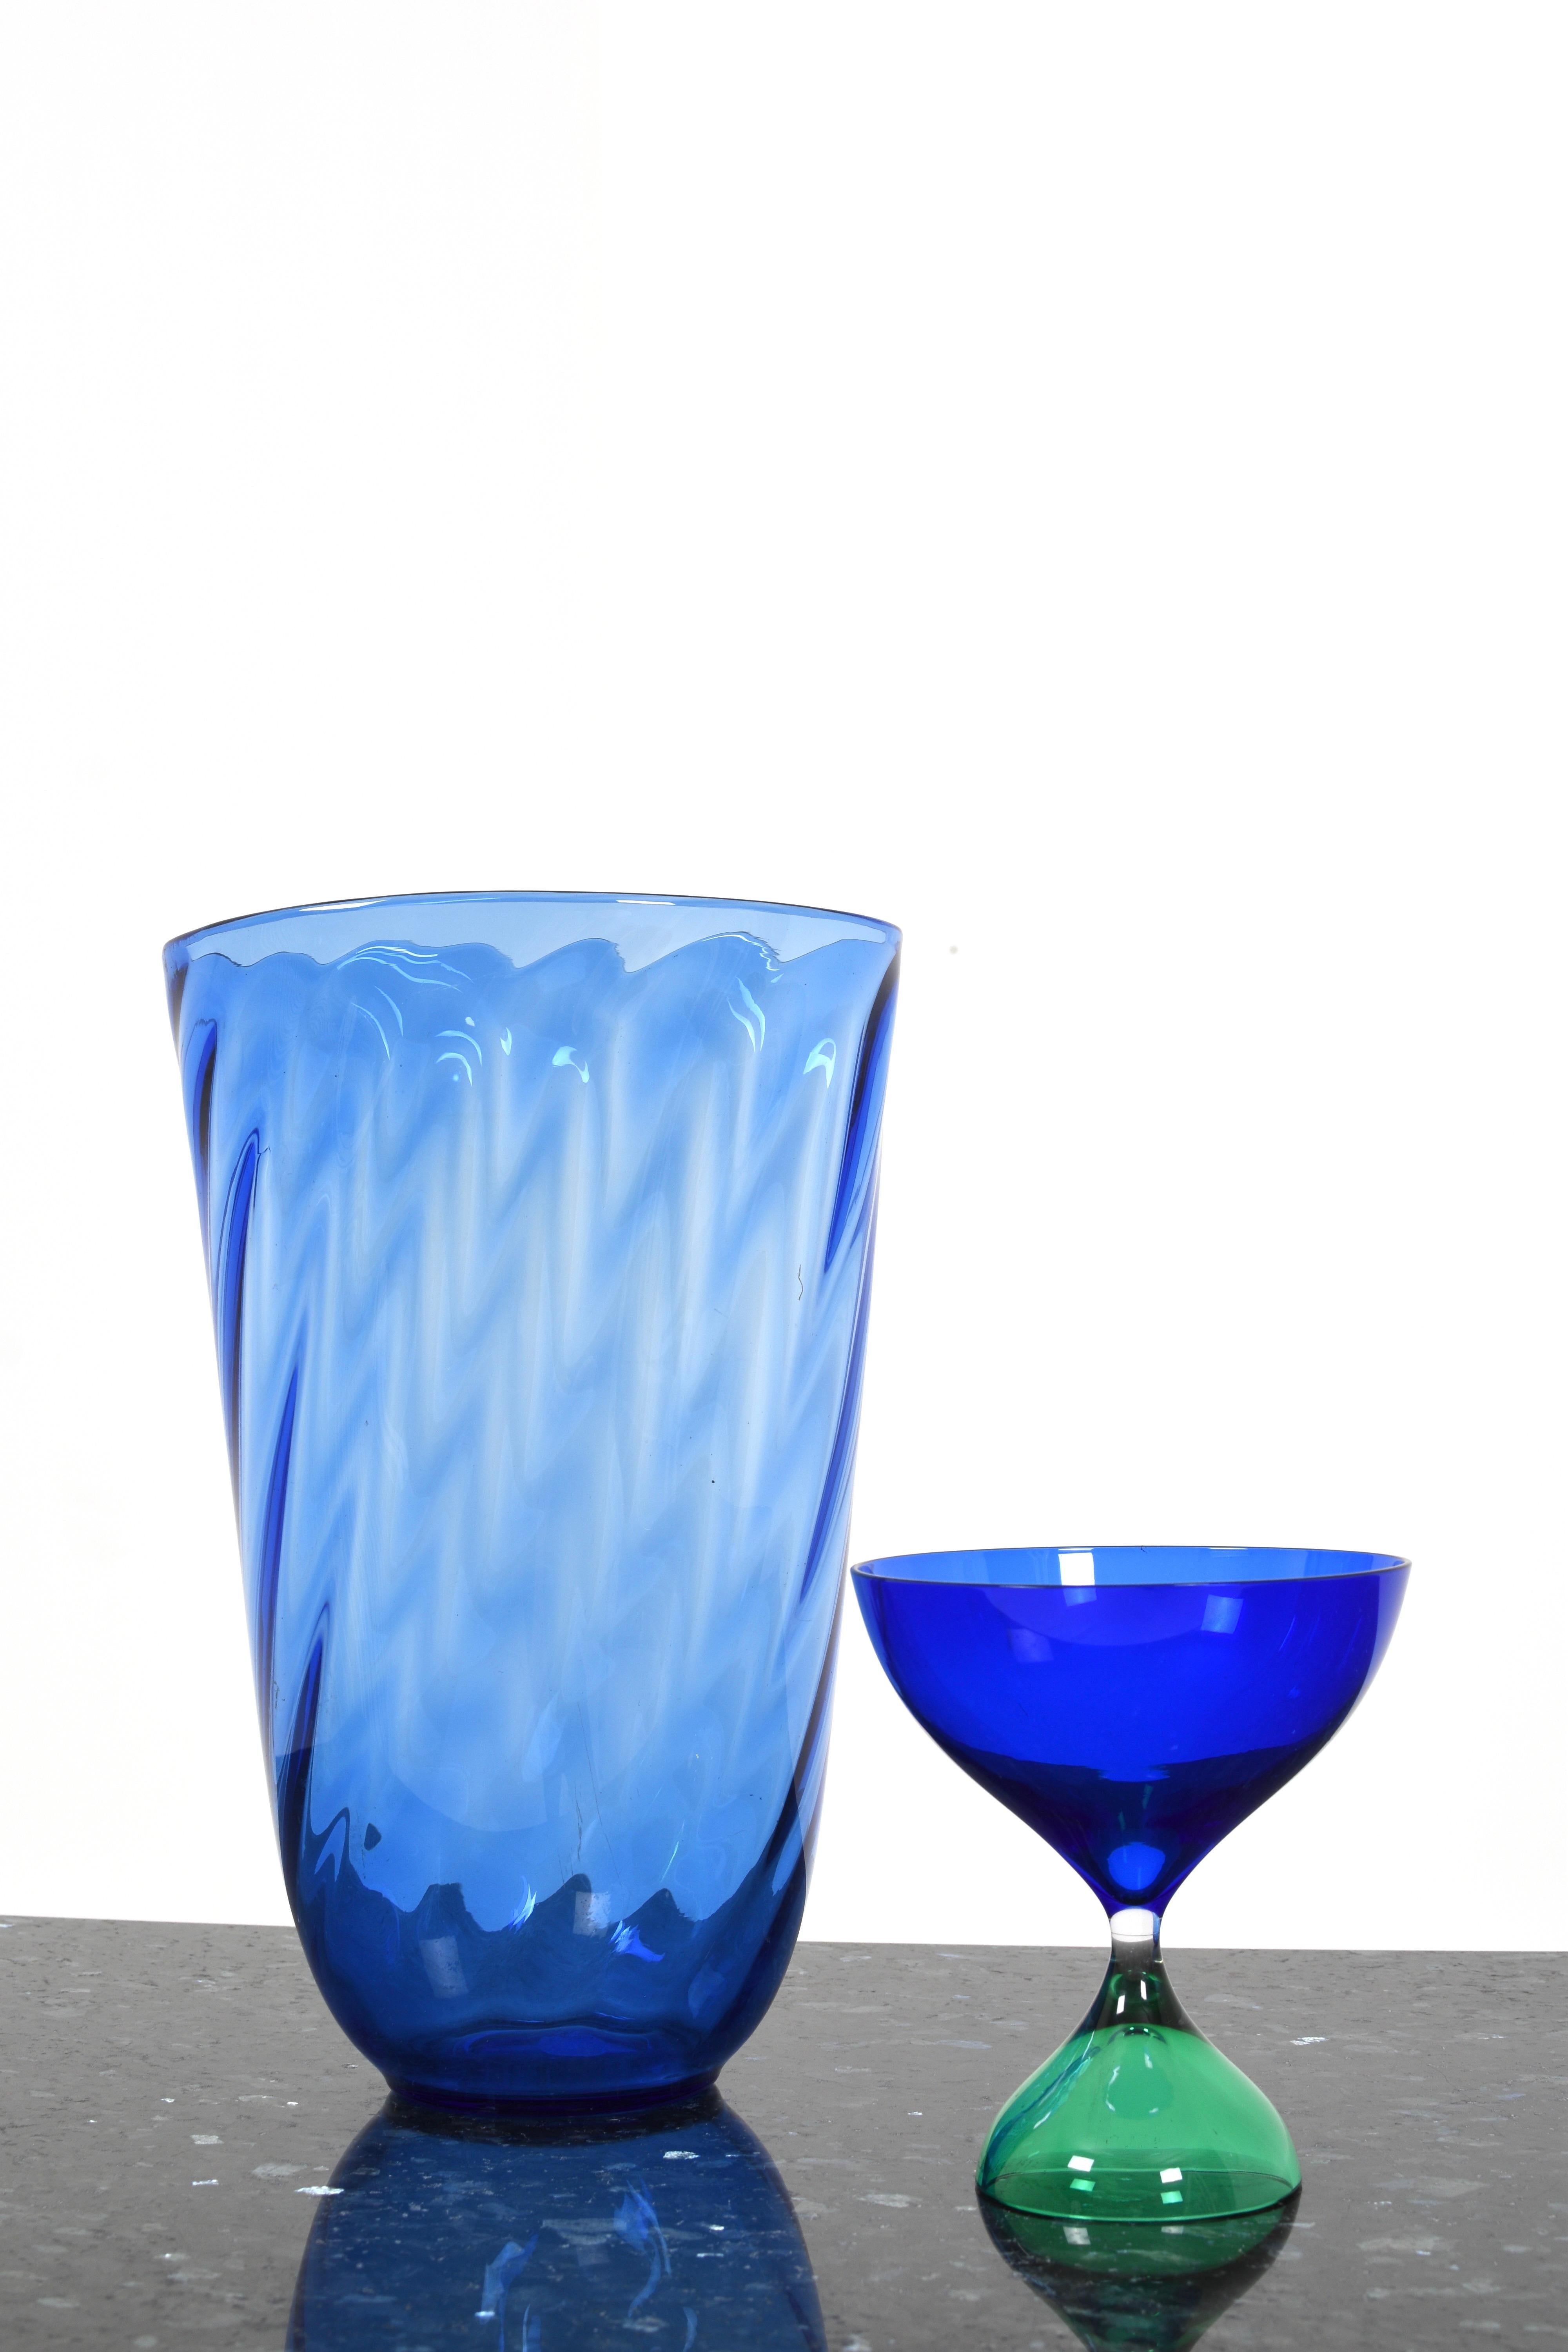 Le vase en verre bleu de Reijmyre Glasbruk est un ornement élégant et intemporel pour votre maison. Ce magnifique vase est fabriqué avec beaucoup d'habileté et d'attention aux détails par les artisans verriers expérimentés de Reijmyre et représente